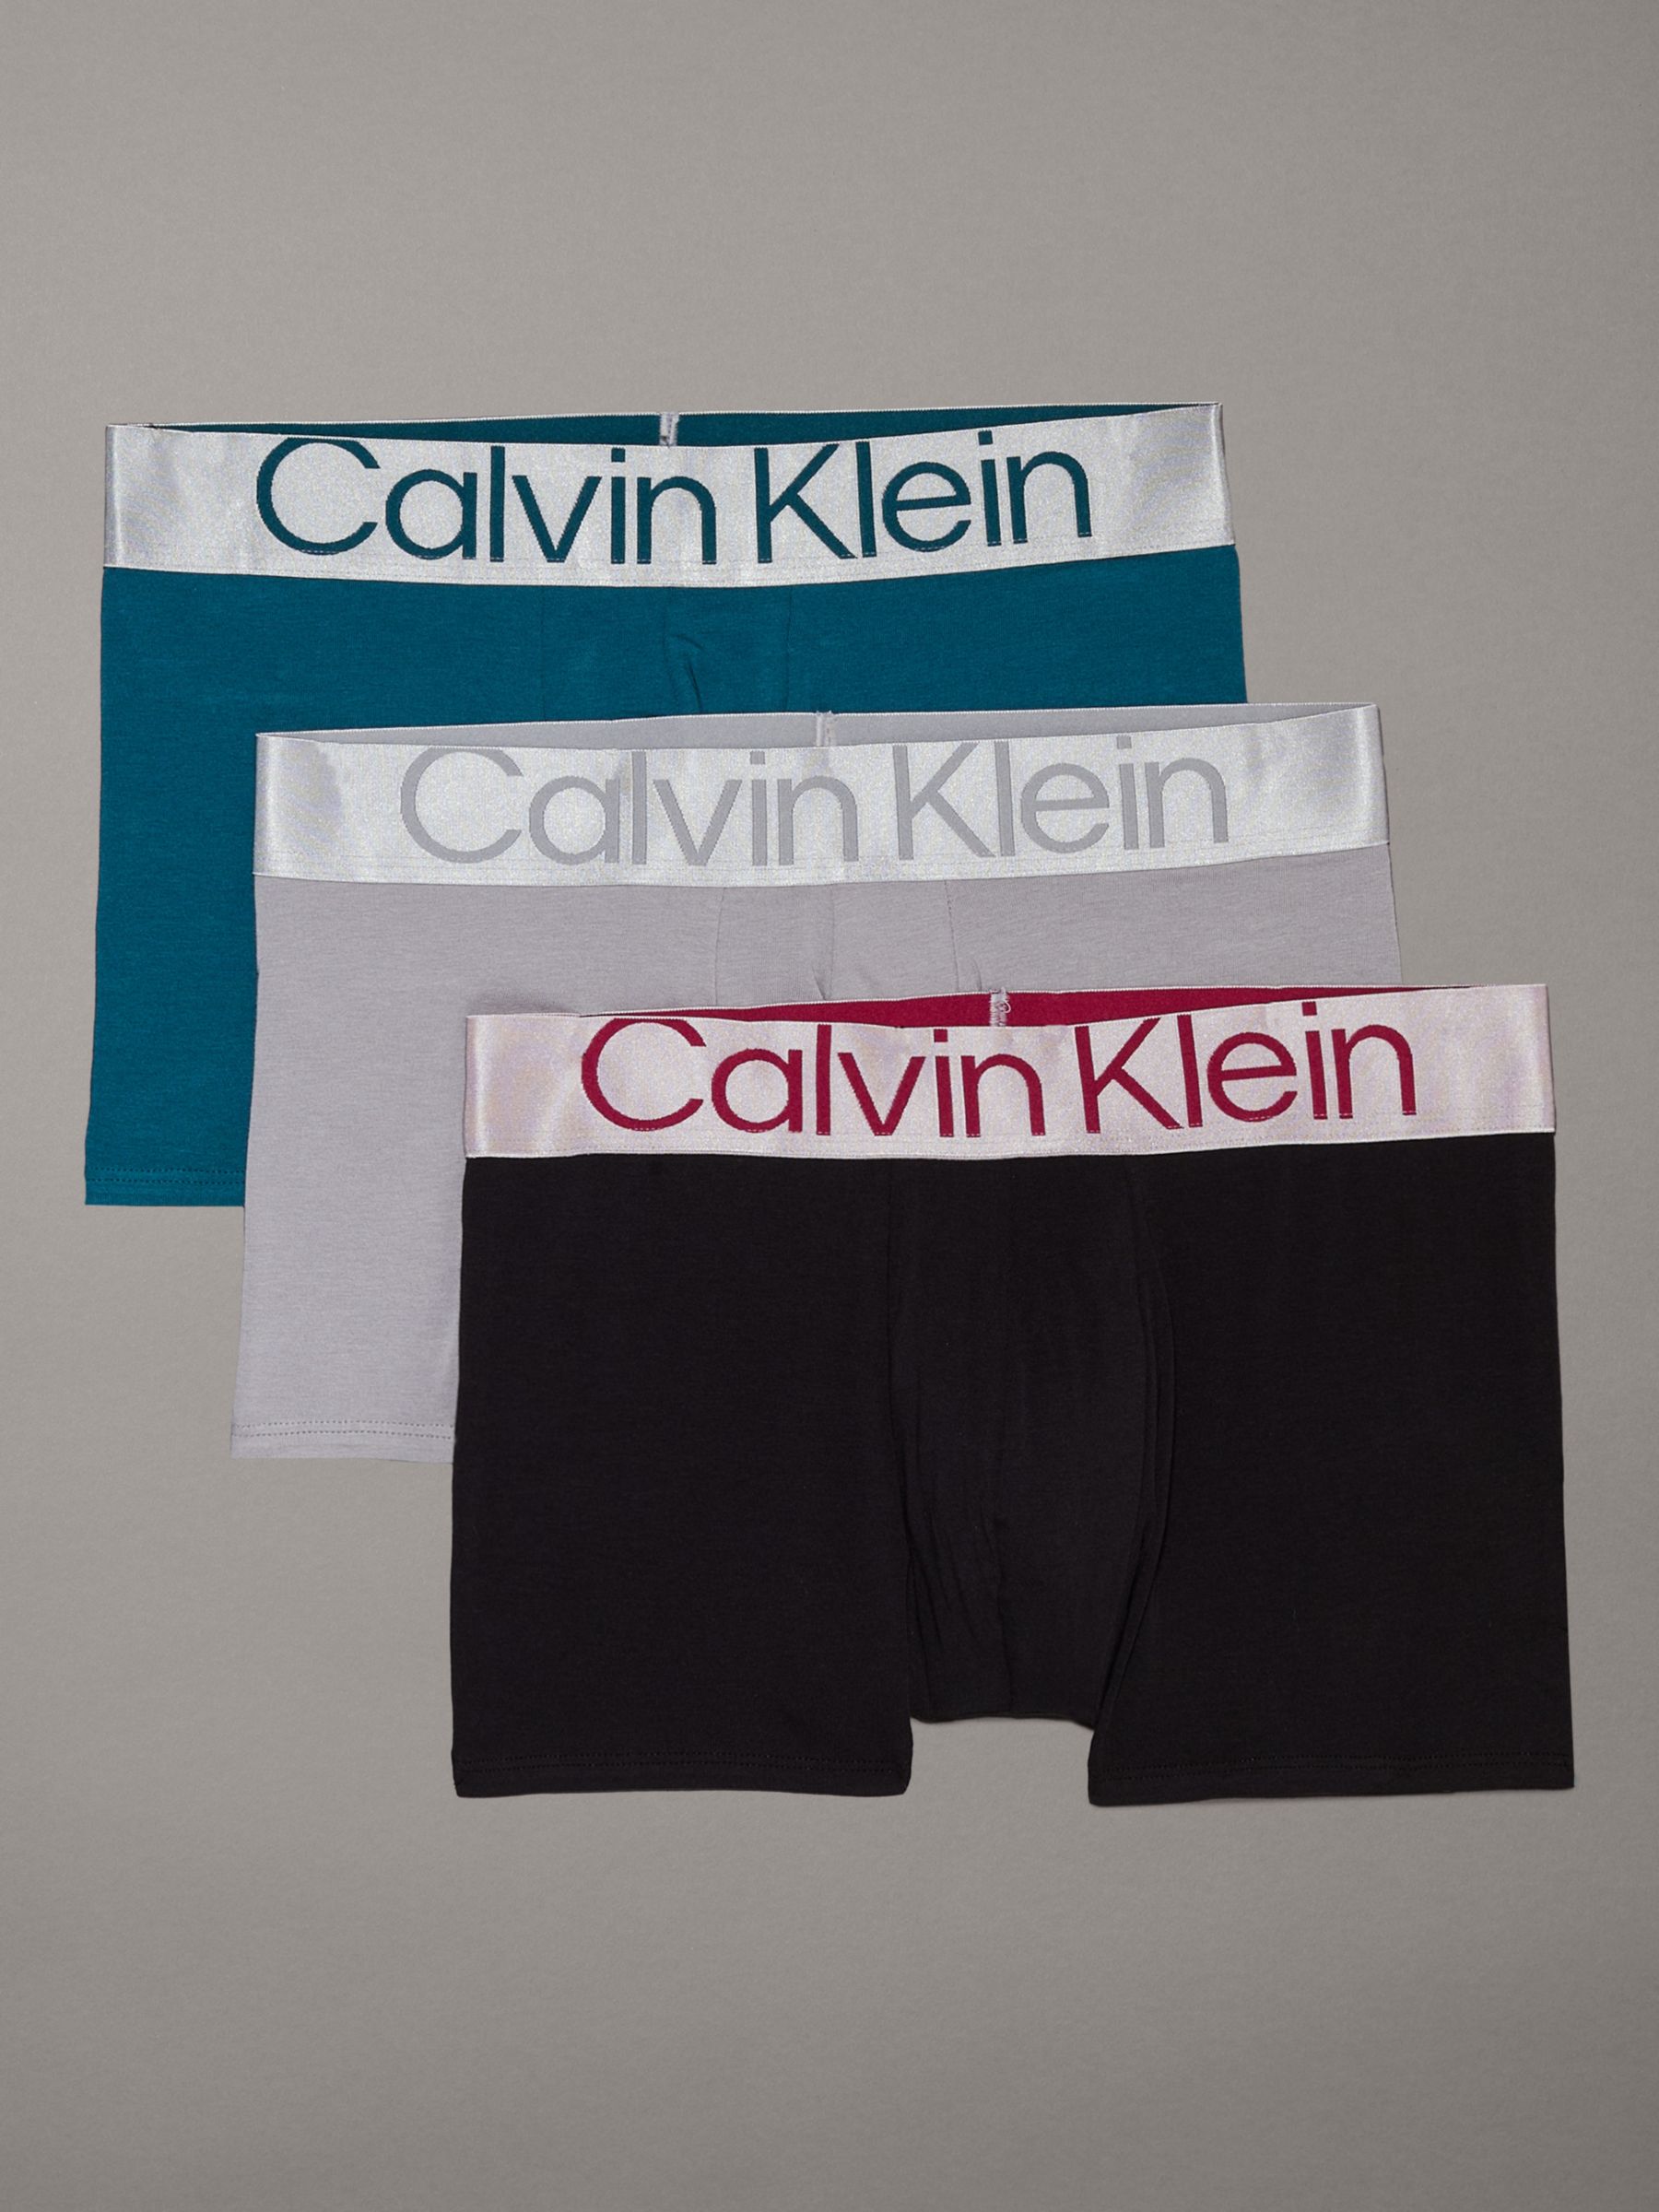 Calvin Klein Classic Trunks, Pack of 3, Black/Green/Multi, M